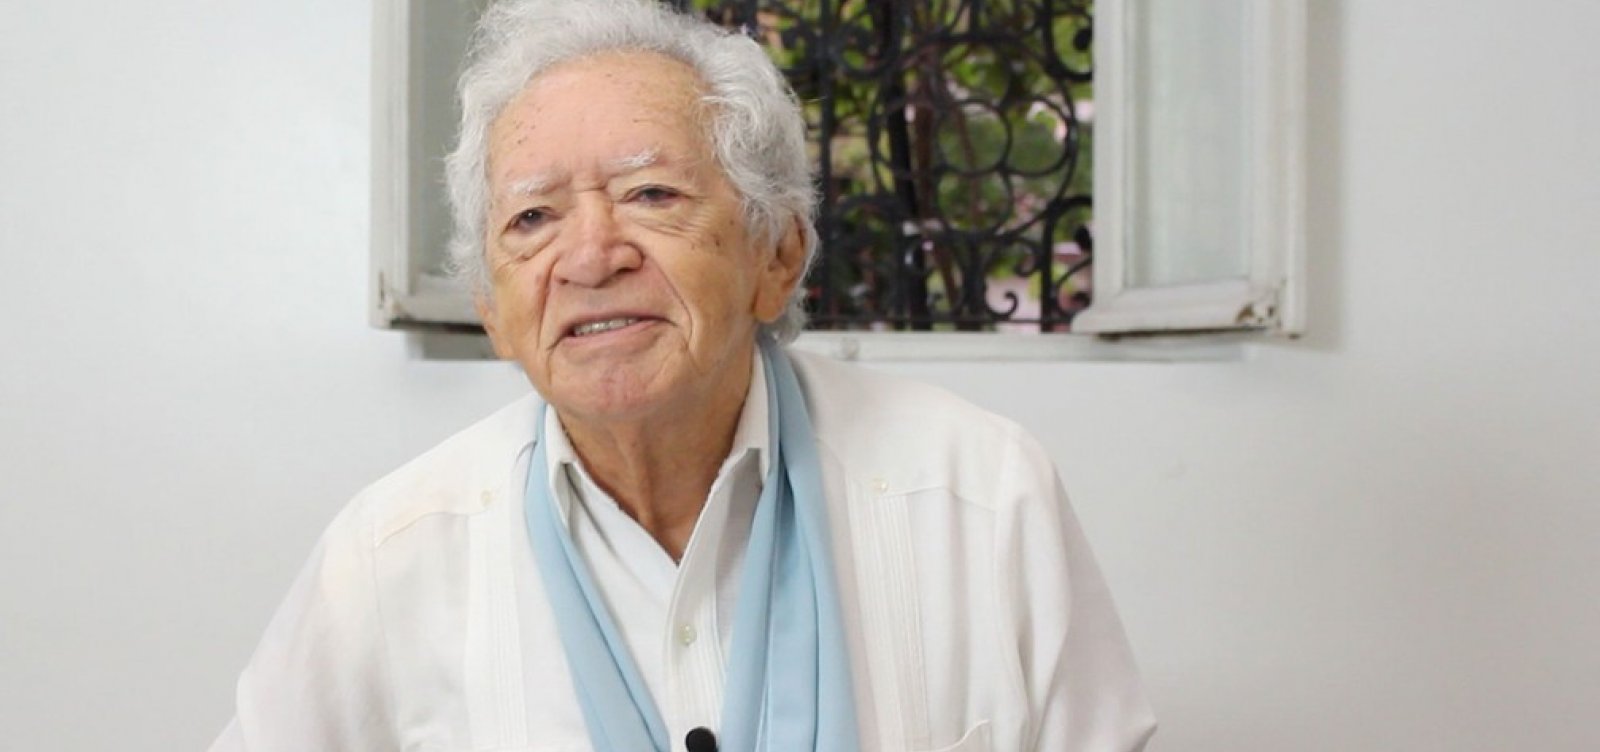 Poeta da floresta, amazonense Thiago de Mello morre aos 95 anos